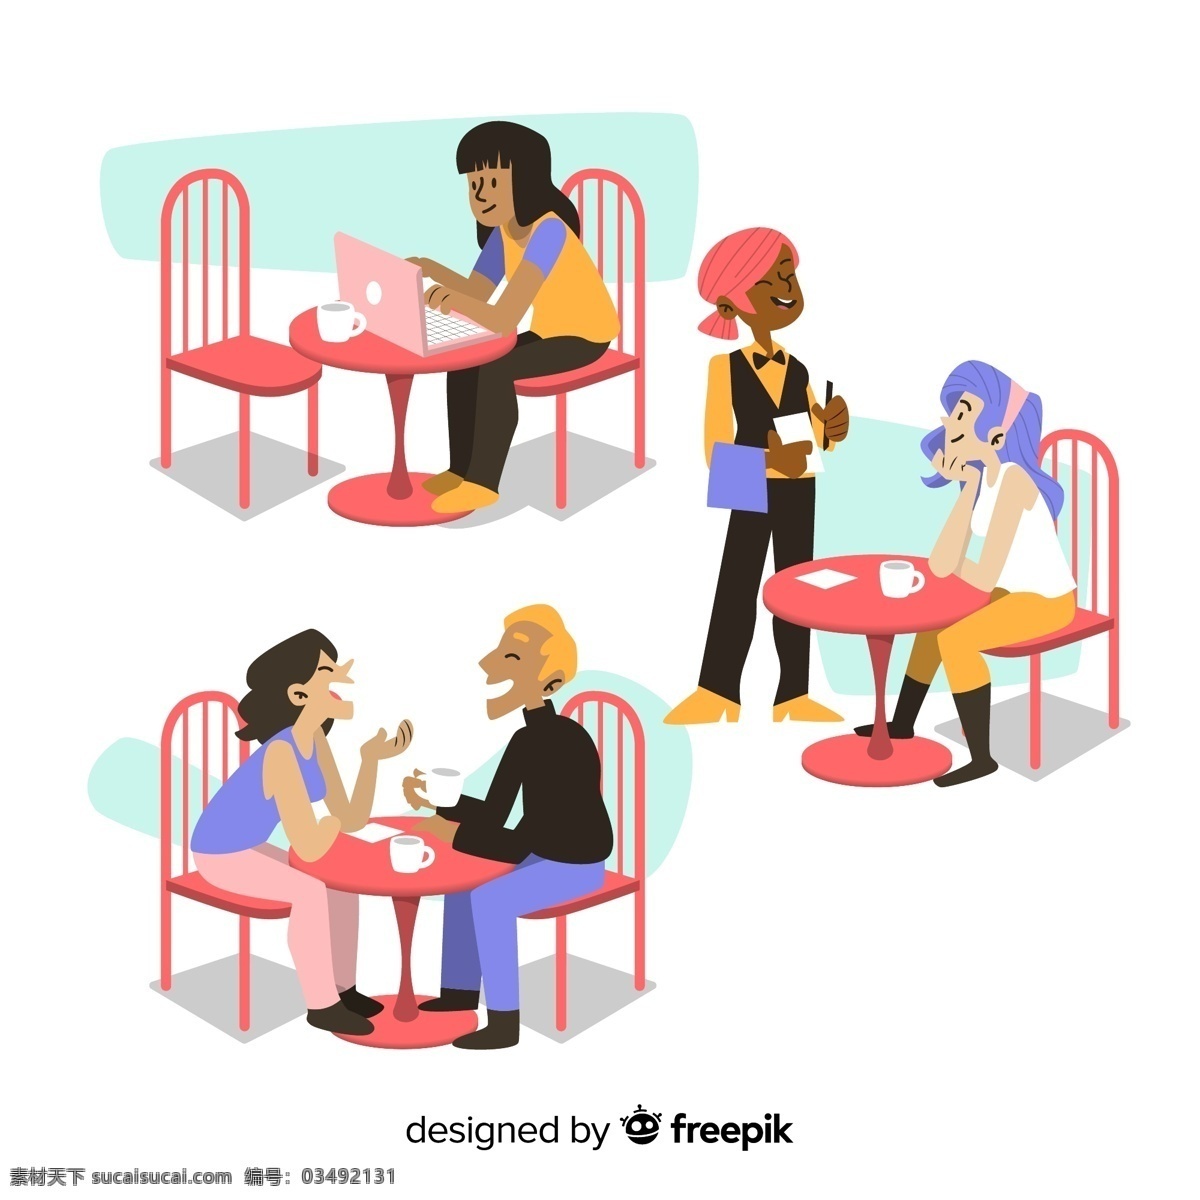 创意 咖啡店 人物 男子 女子 约会 椅子 电脑 桌子 聊天 服务生 点餐 顾客 动漫动画 动漫人物